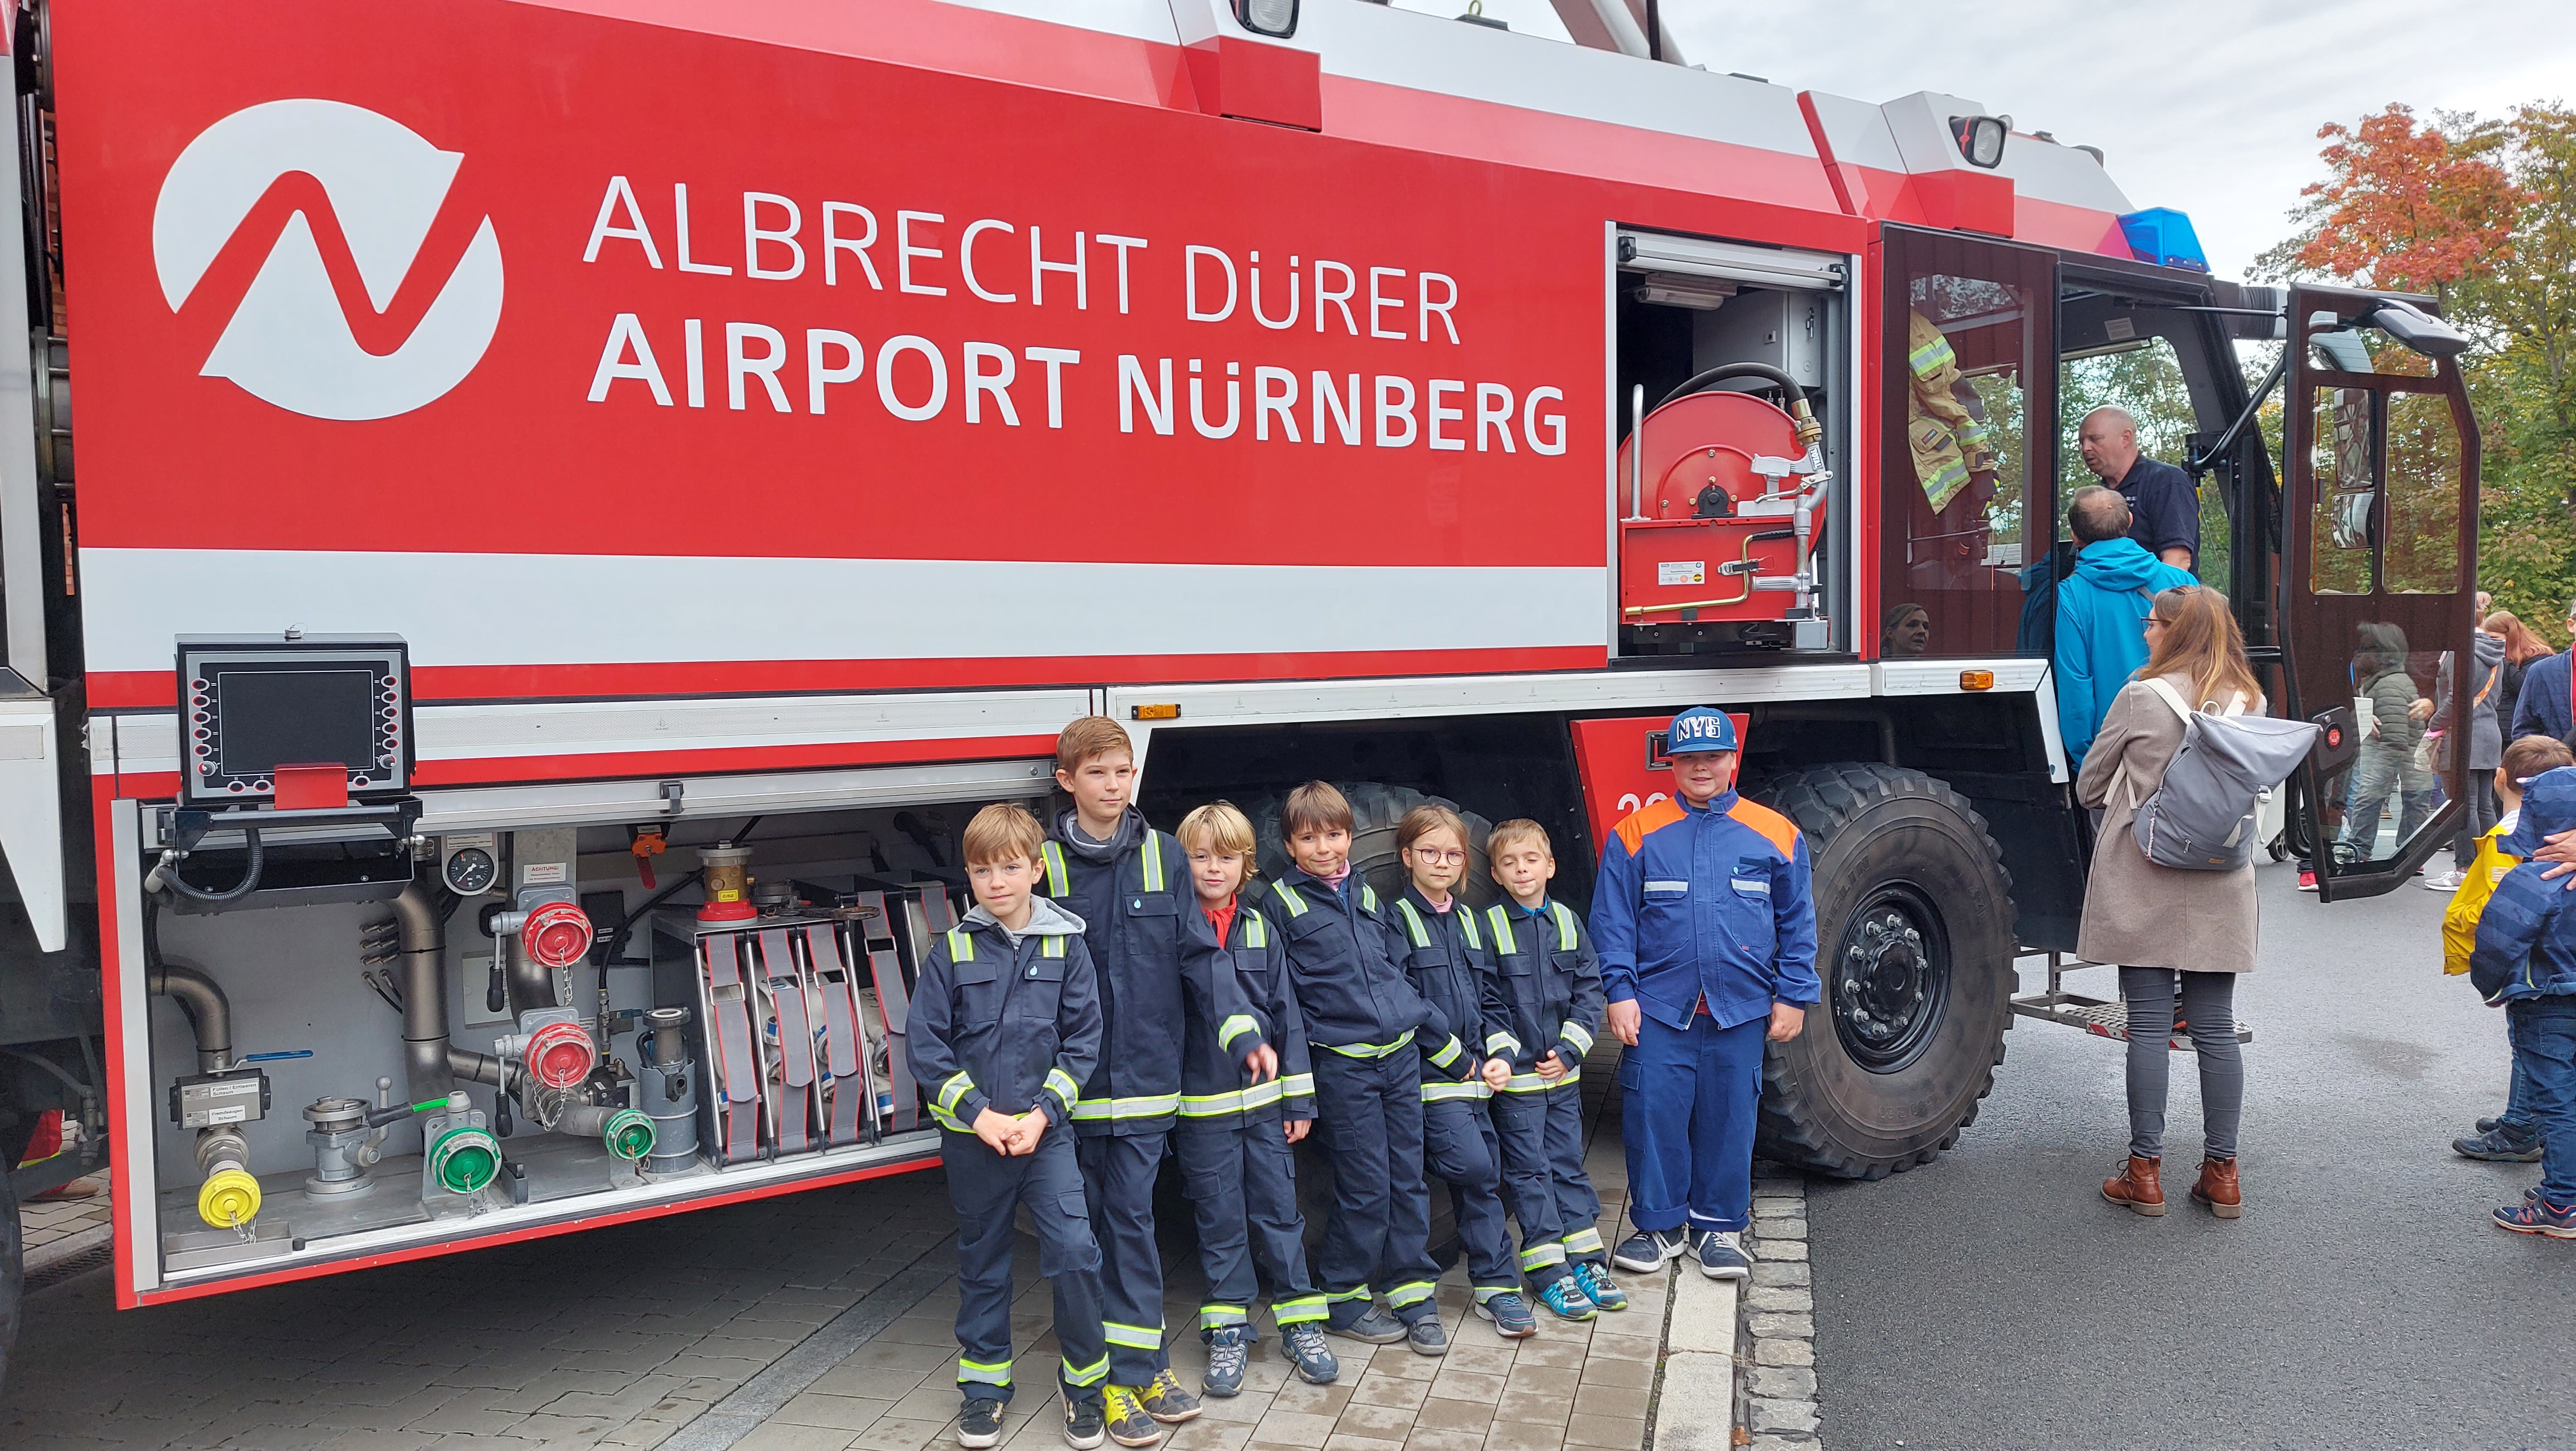 noch ein Gruppenbild vor dem FLF (Flugfeldlöschfahrzeug) des Airport Nürnberg - größer geht's nimmer!